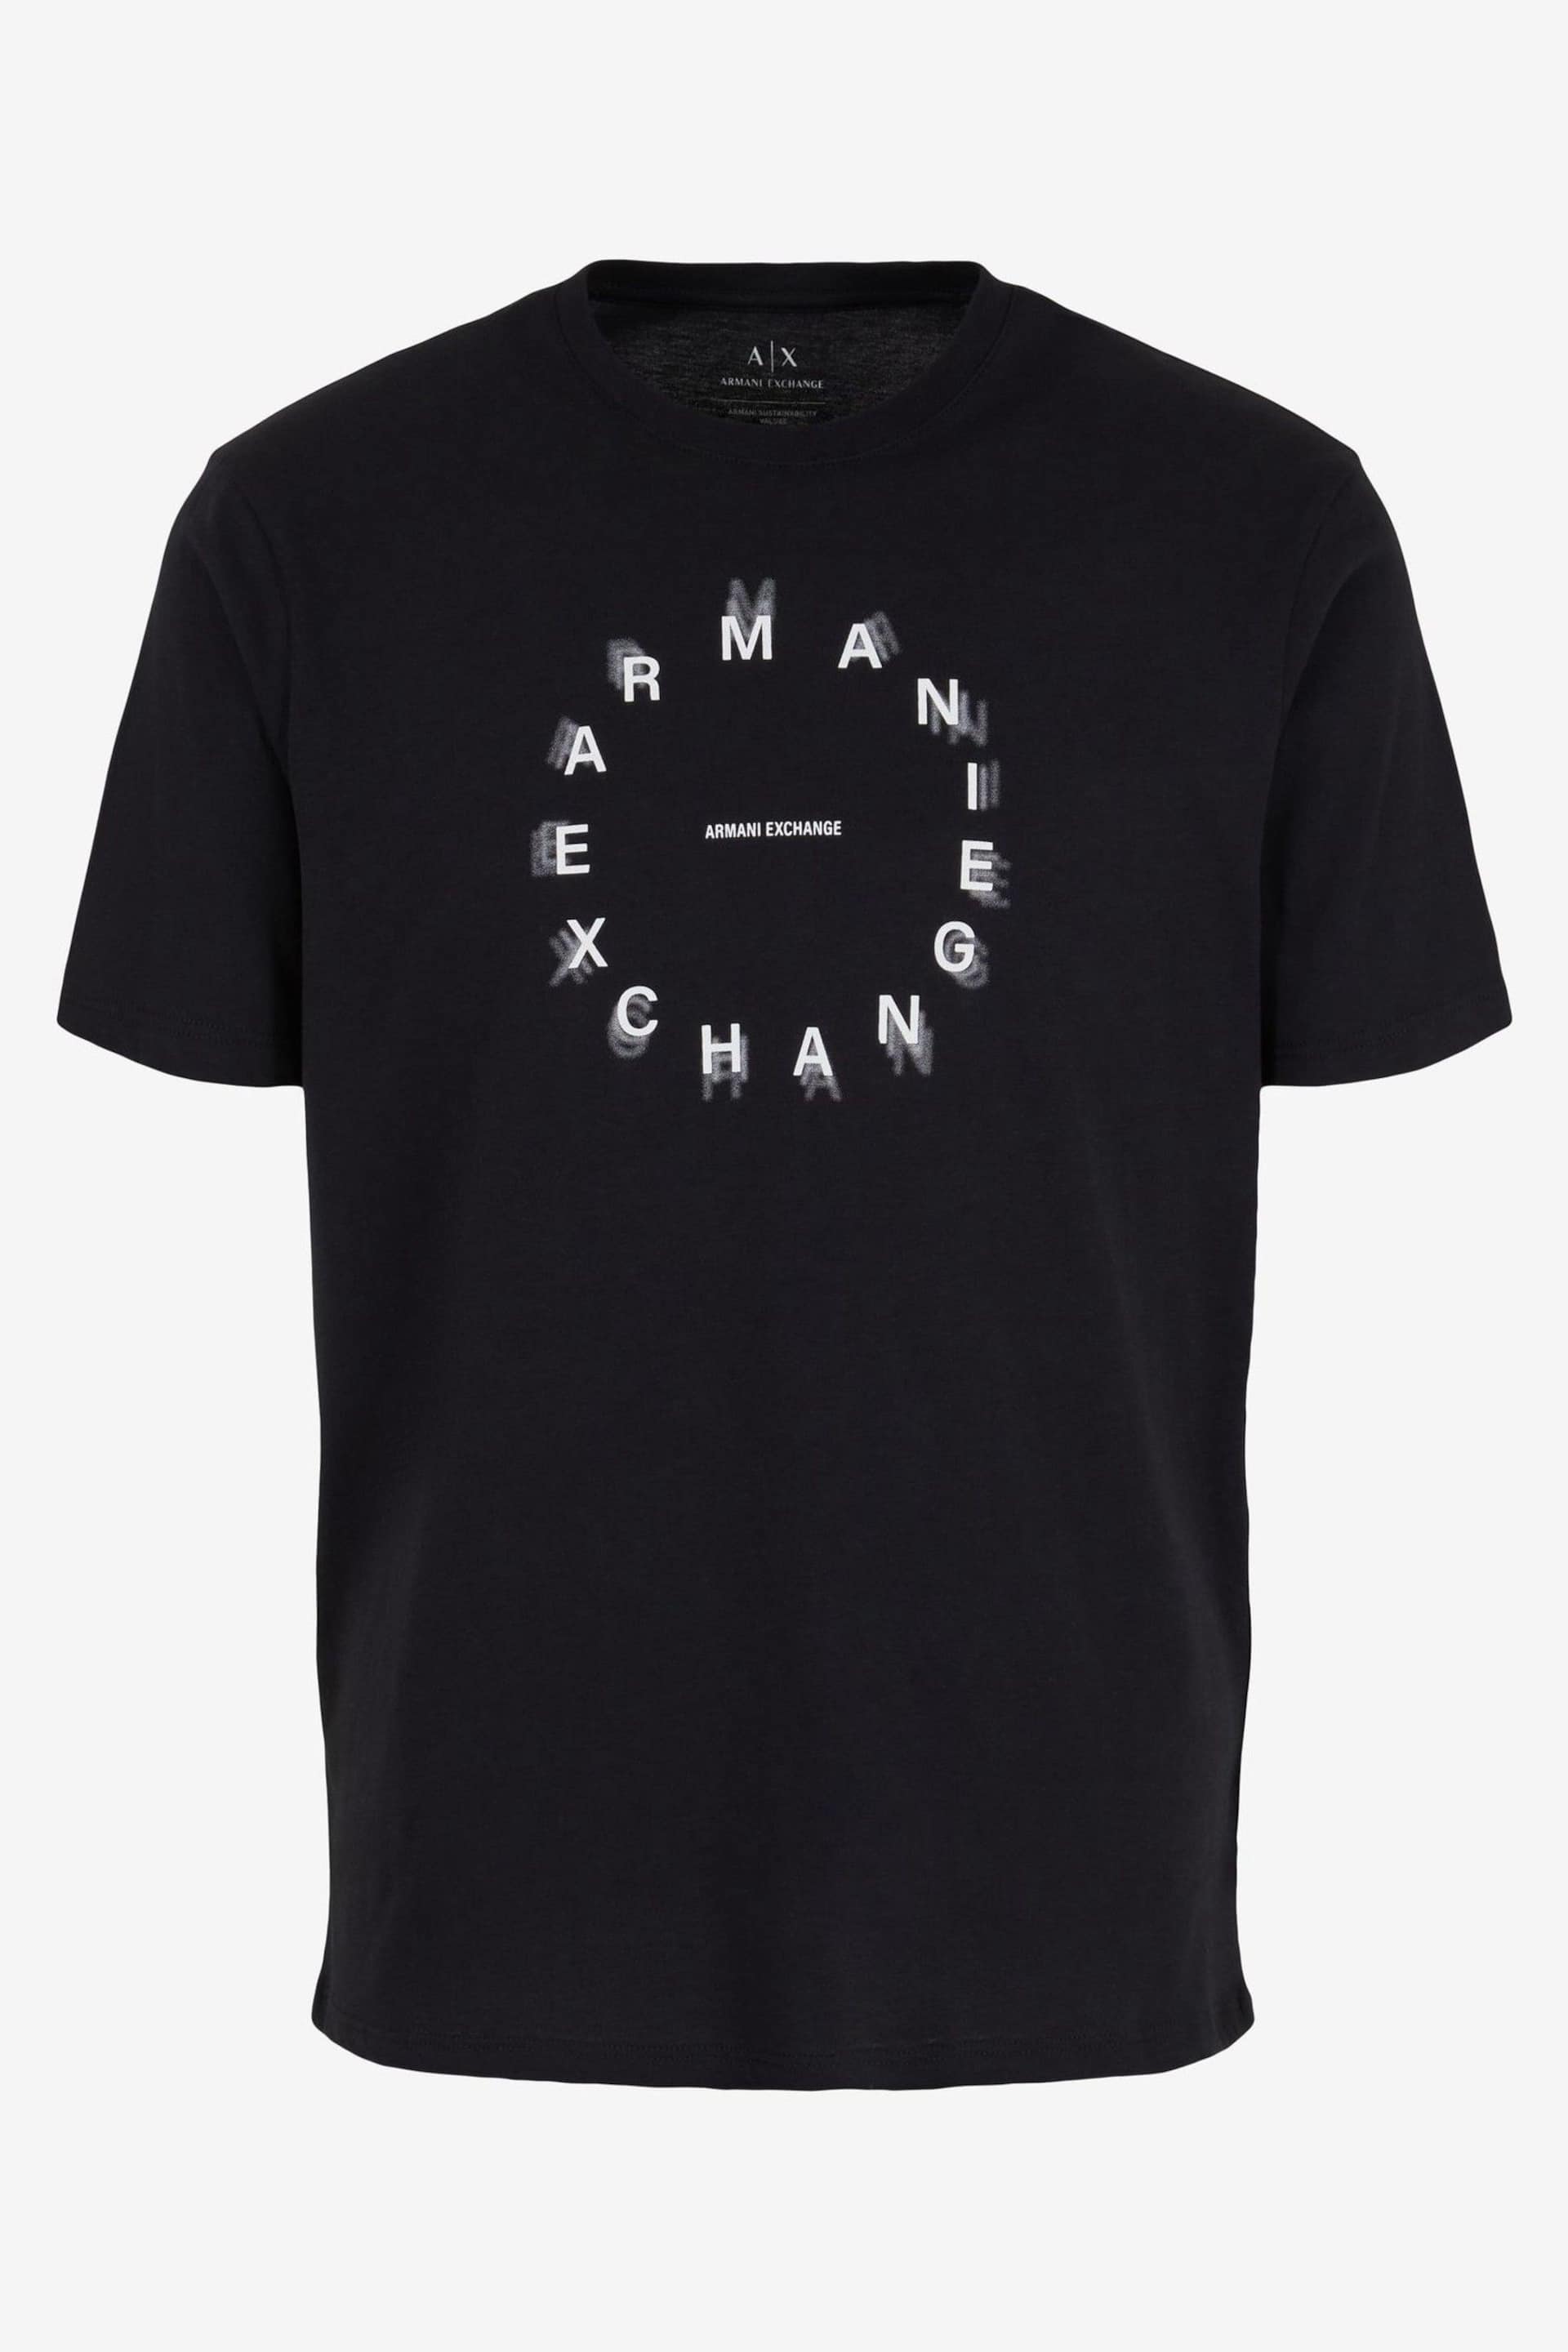 Armani Exchange Circle Logo Black T-Shirt - Image 4 of 4